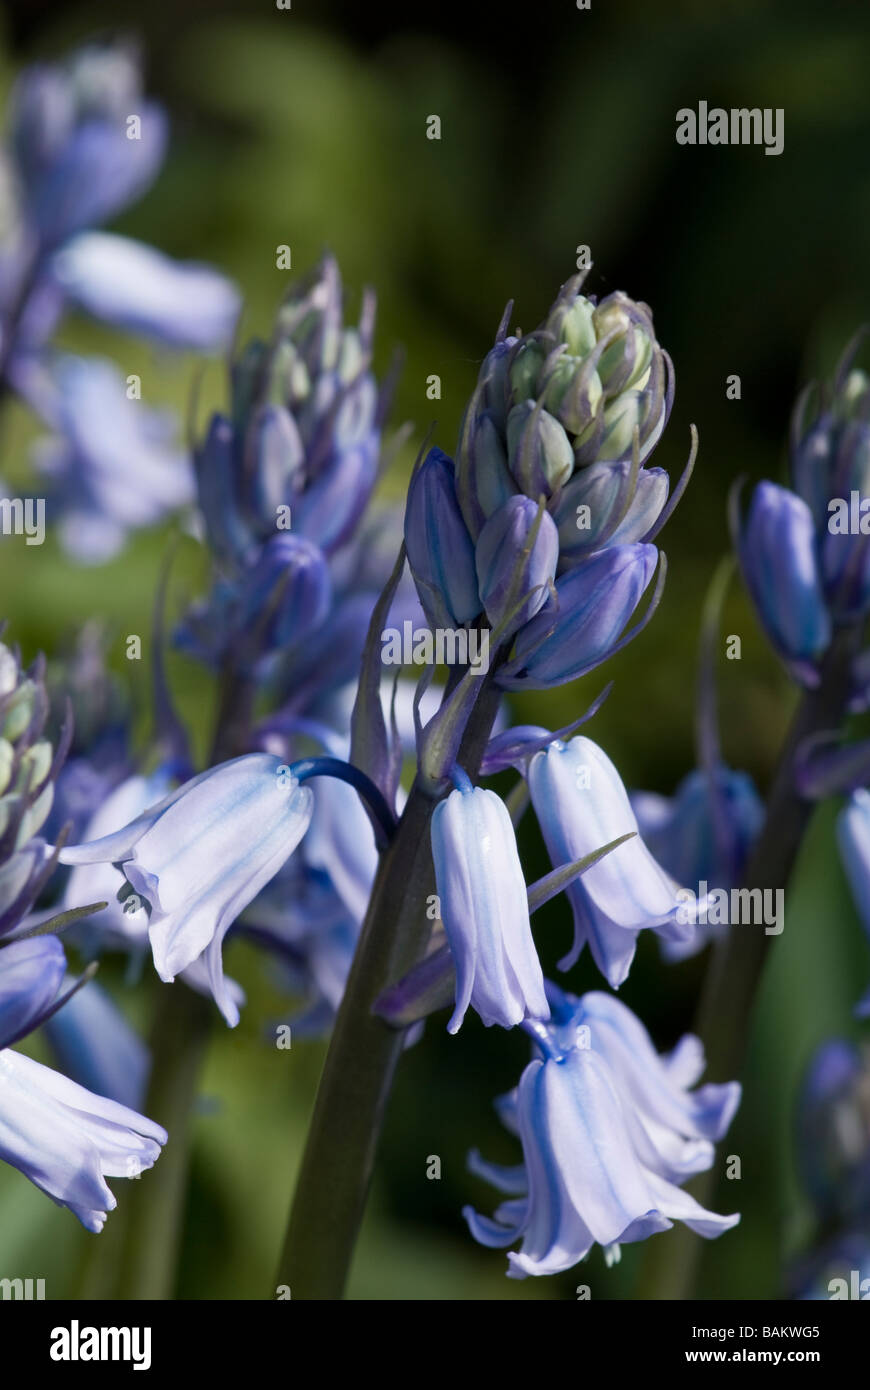 Hyacinthoides Hispanica, Spanish Bluebell, close up detailed shot Stock Photo